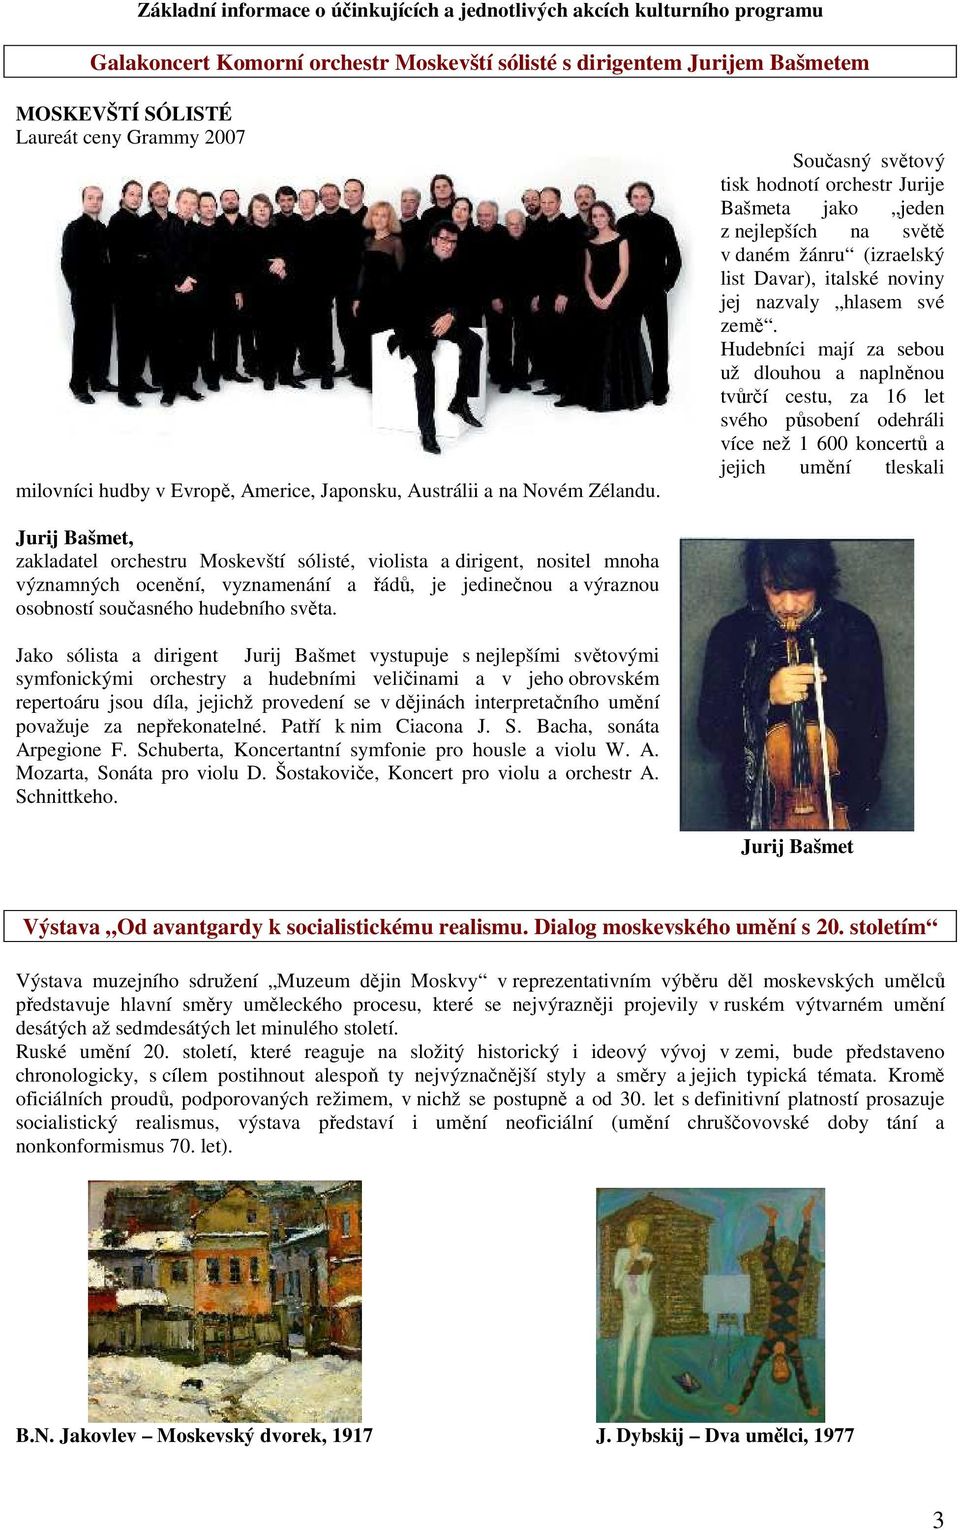 Současný světový tisk hodnotí orchestr Jurije Bašmeta jako jeden z nejlepších na světě v daném žánru (izraelský list Davar), italské noviny jej nazvaly hlasem své země.